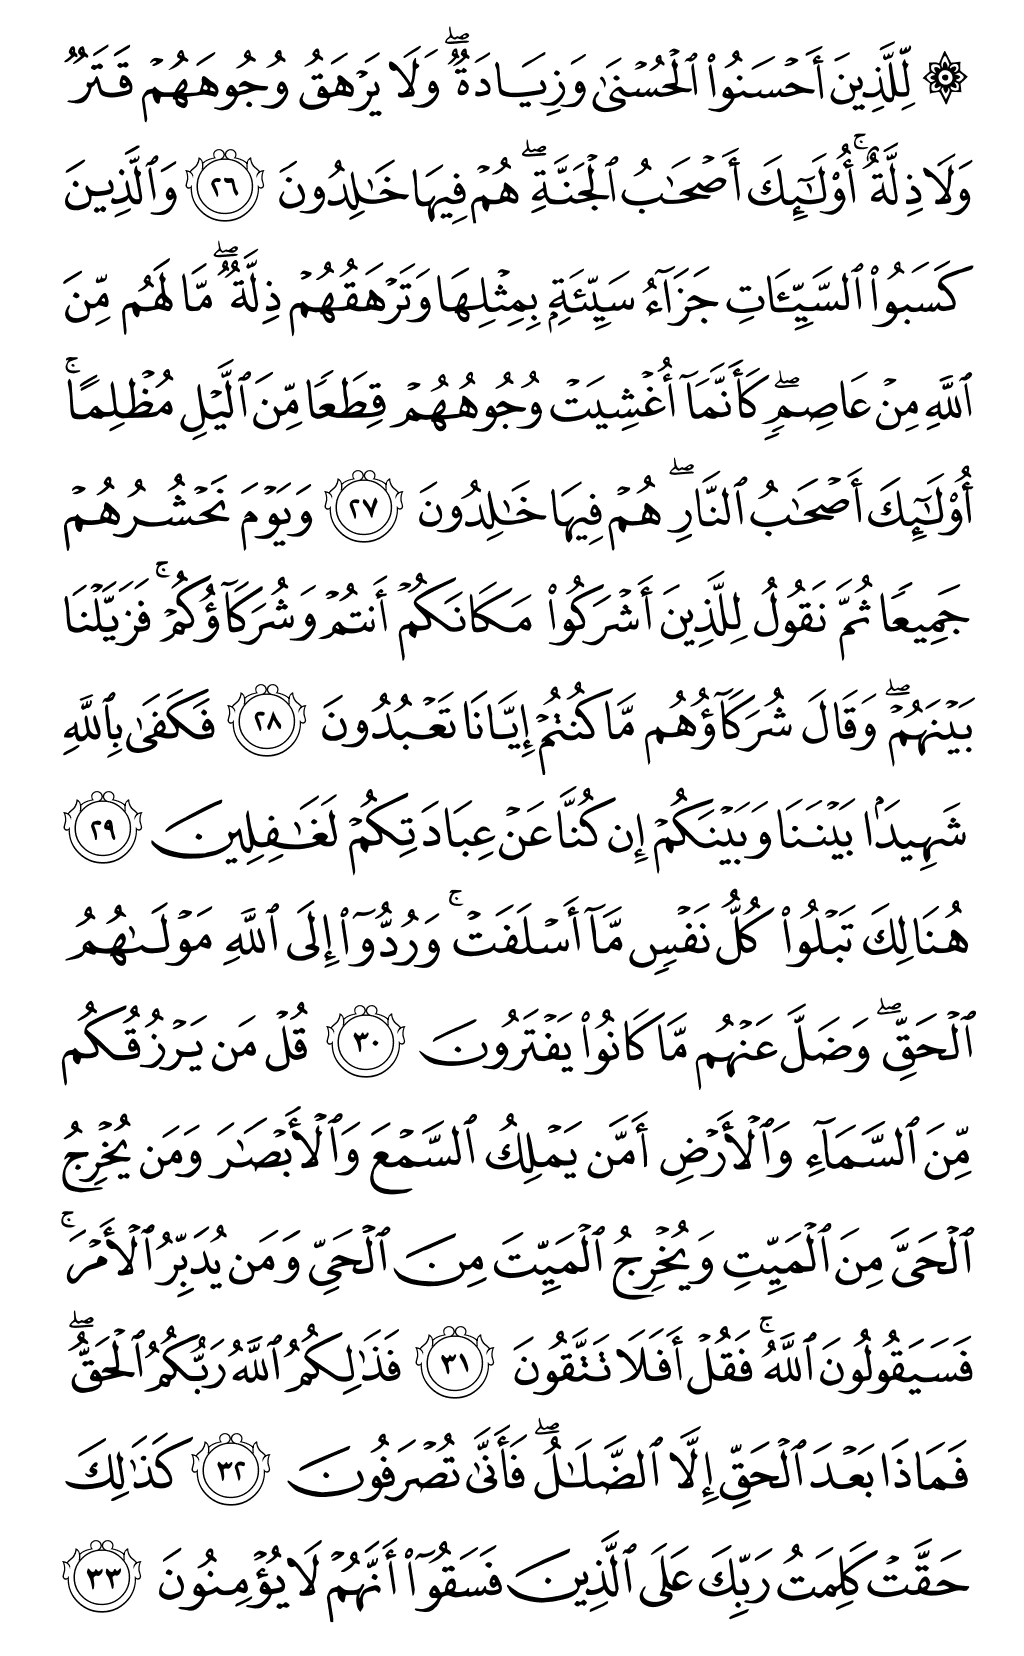 الصفحة رقم 212 من القرآن الكريم